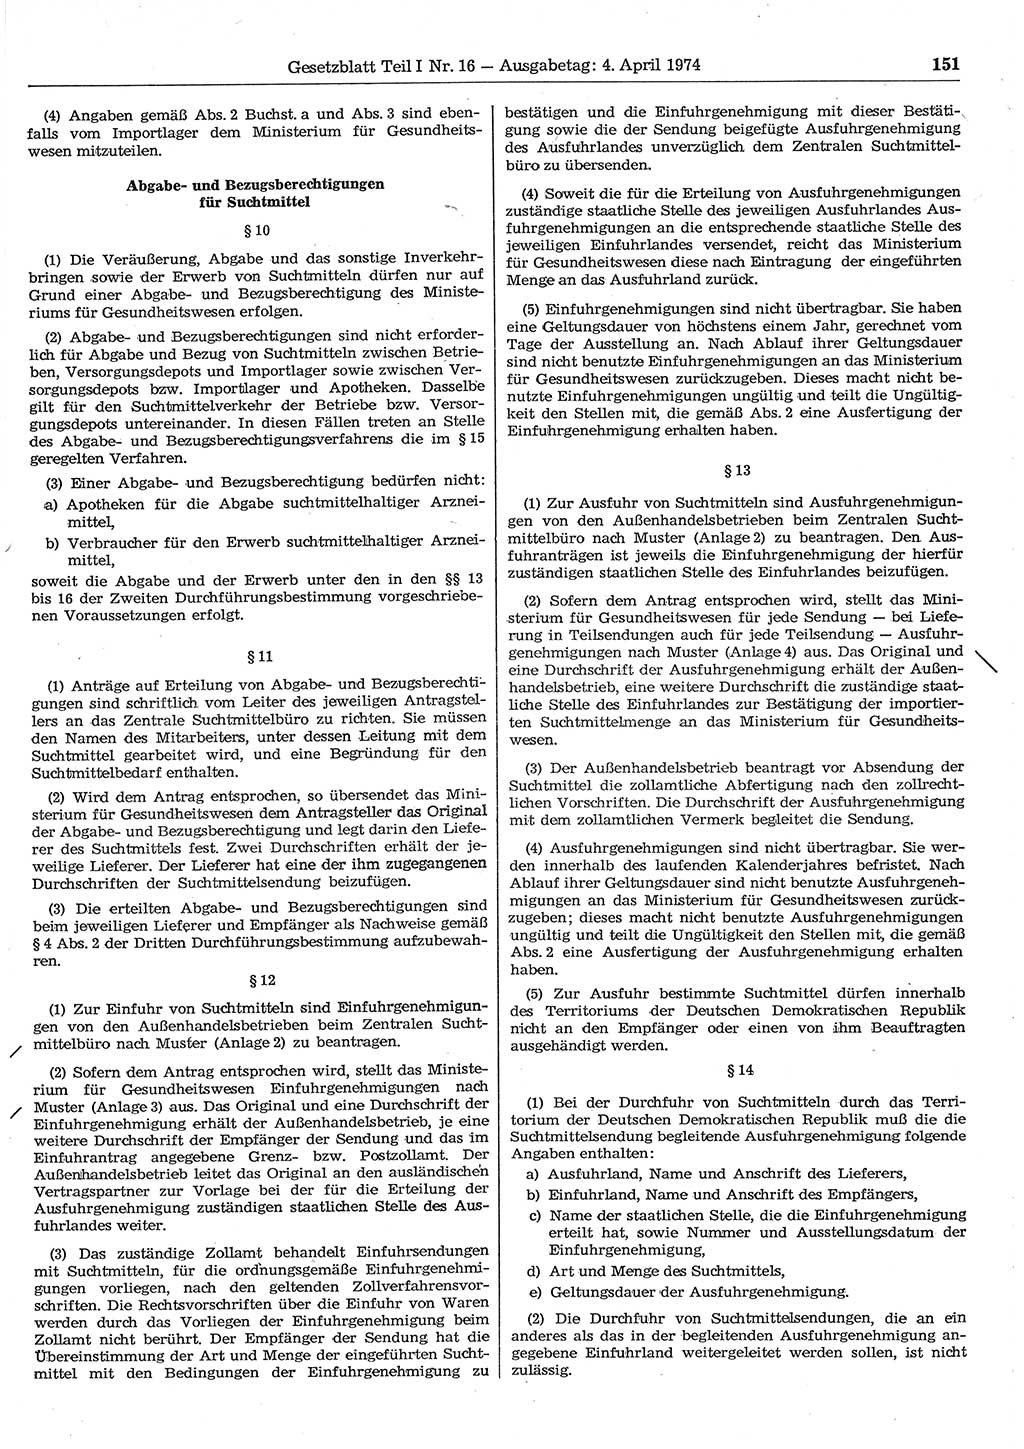 Gesetzblatt (GBl.) der Deutschen Demokratischen Republik (DDR) Teil Ⅰ 1974, Seite 151 (GBl. DDR Ⅰ 1974, S. 151)